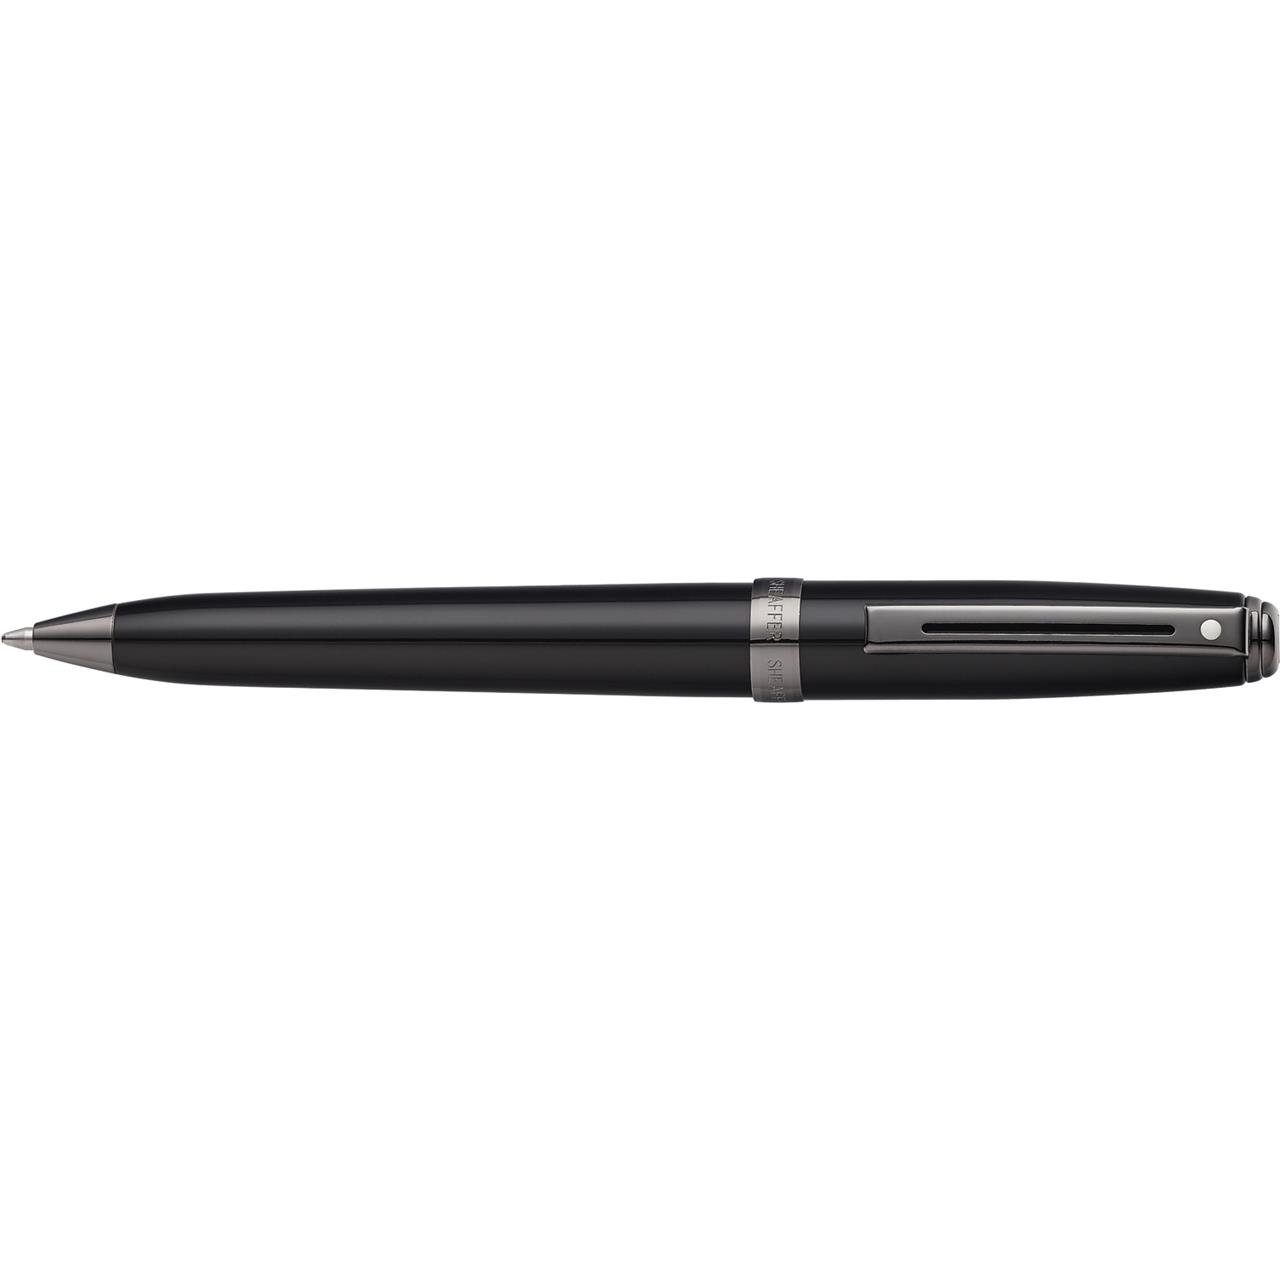 Sheaffer Pen - Black & Gunmetal